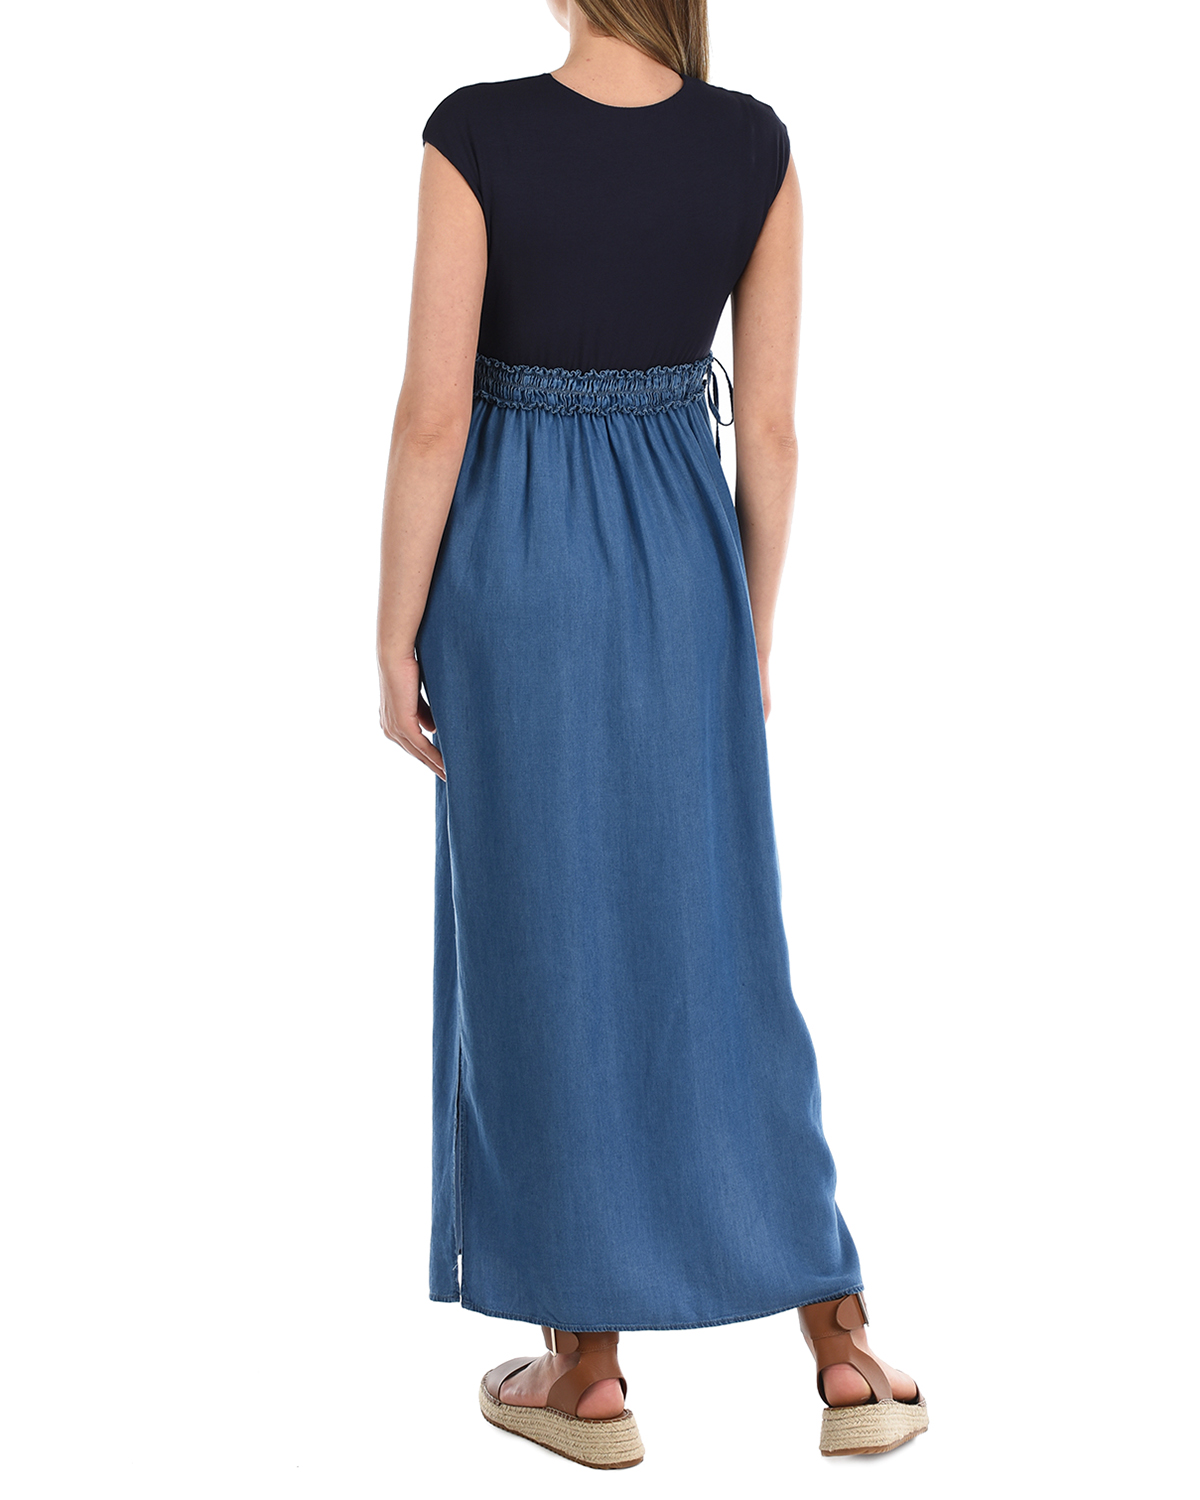 Платье с джинсовой юбкой Attesa, размер 38, цвет синий - фото 3